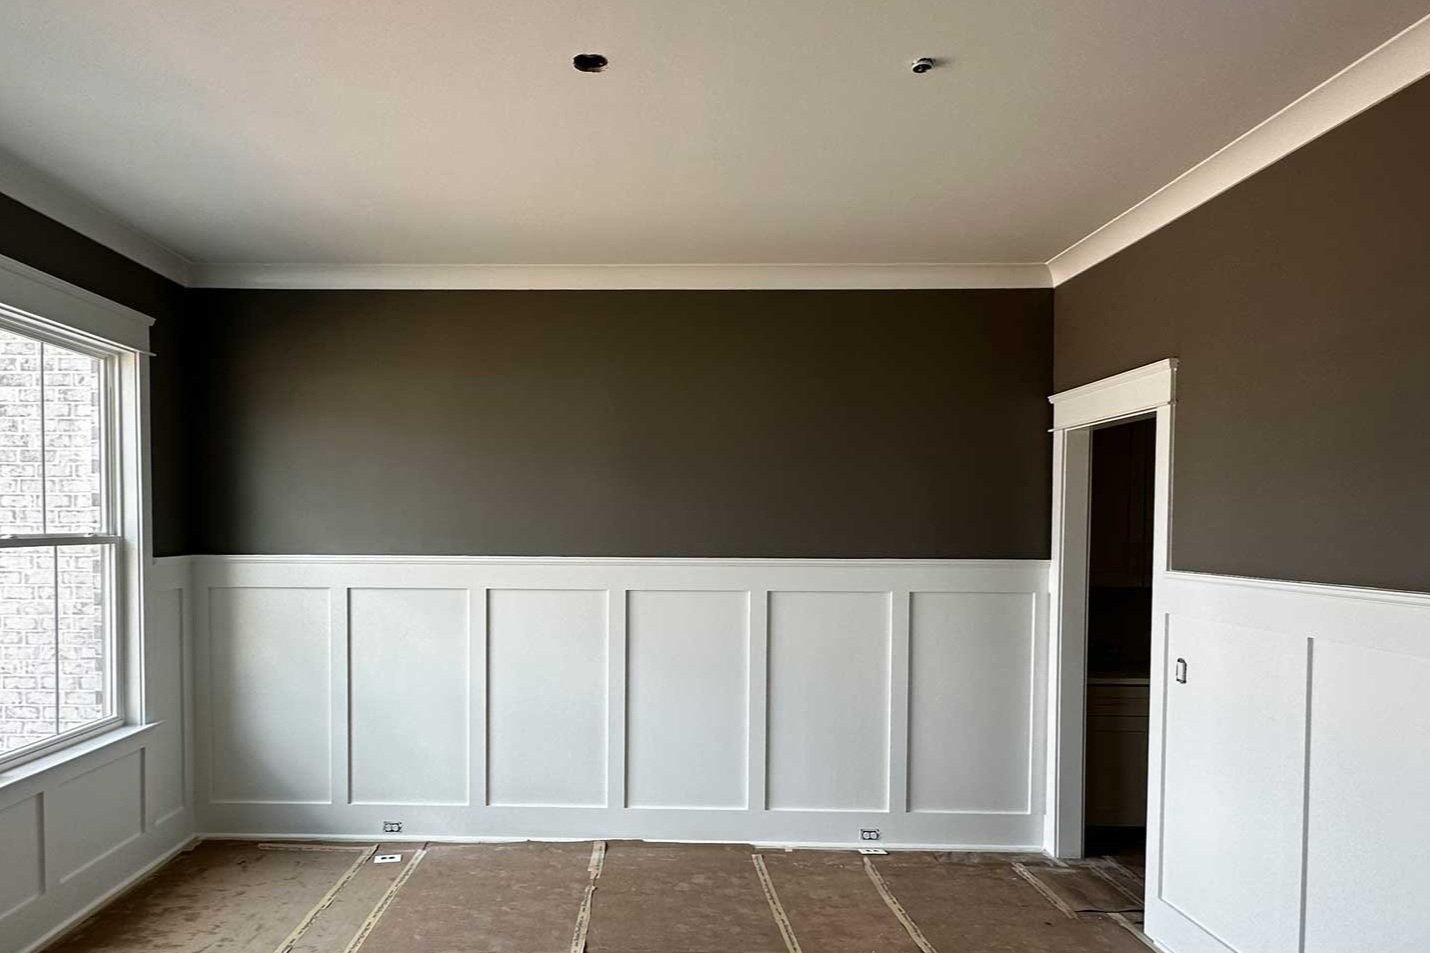 trim-brown-painted-room.jpg